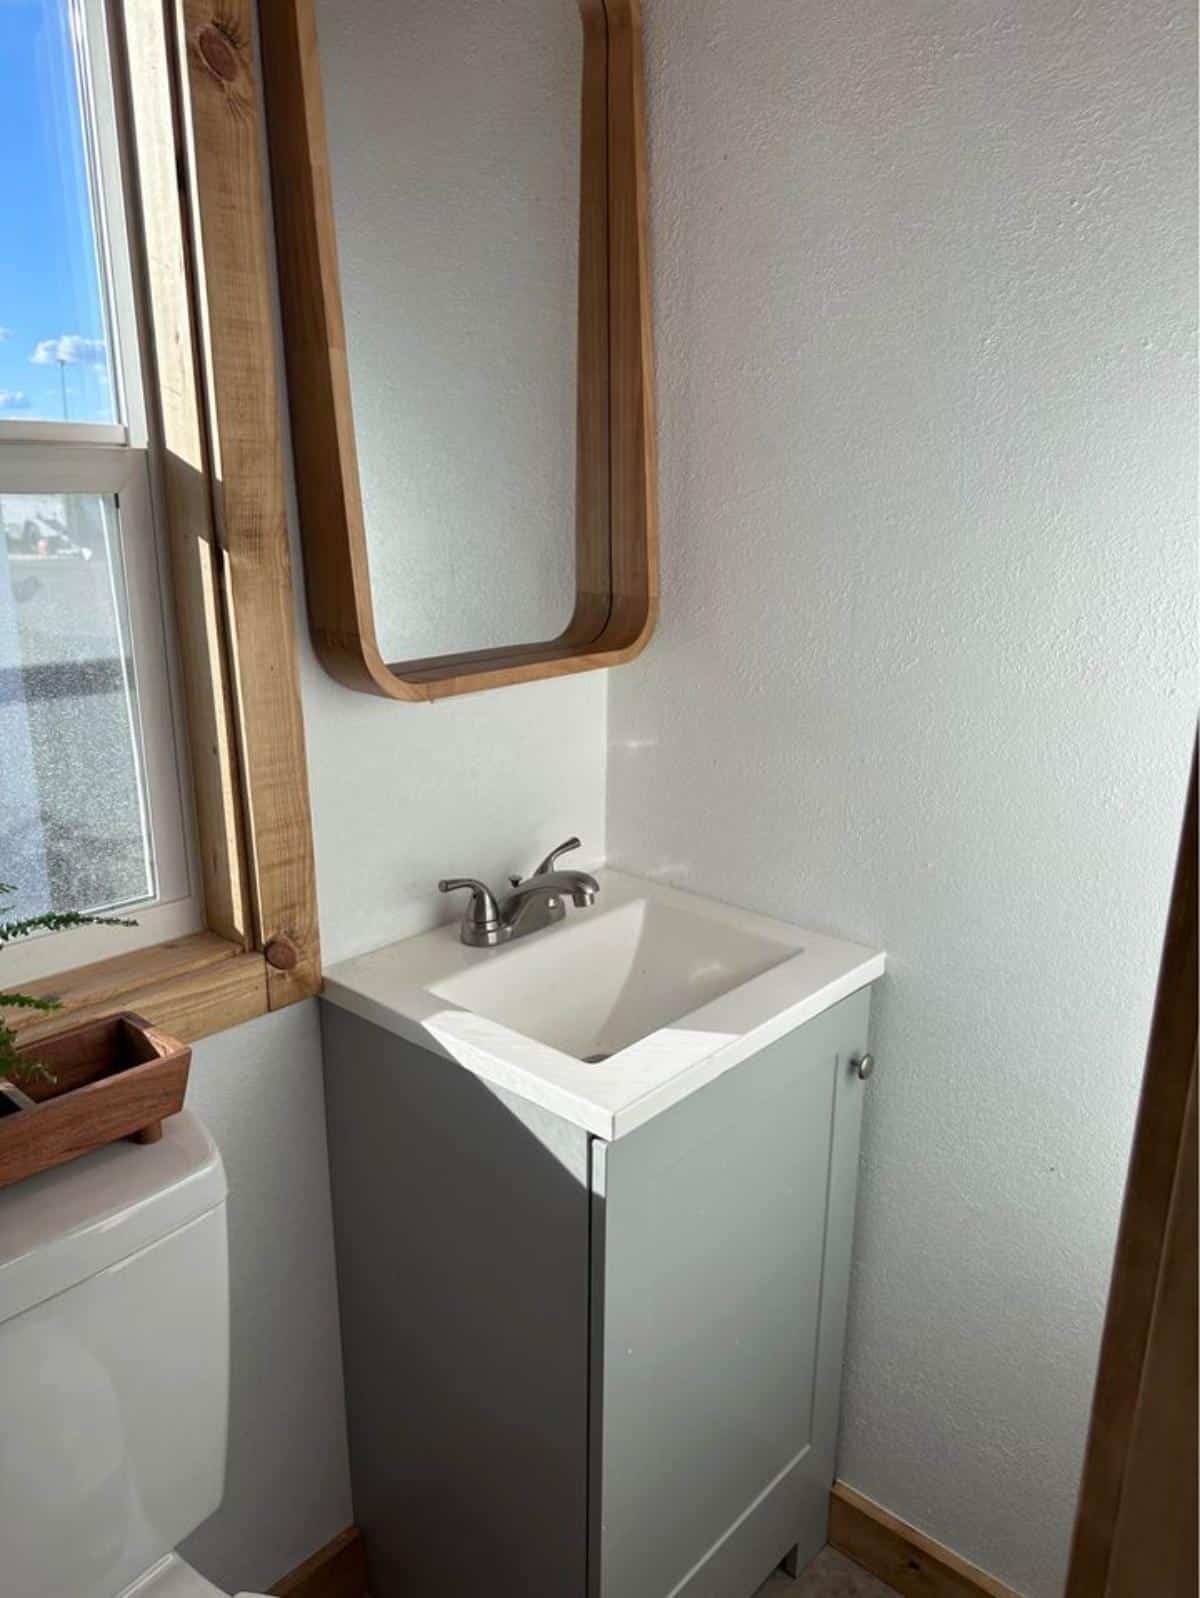 sink with vanity in bathroom